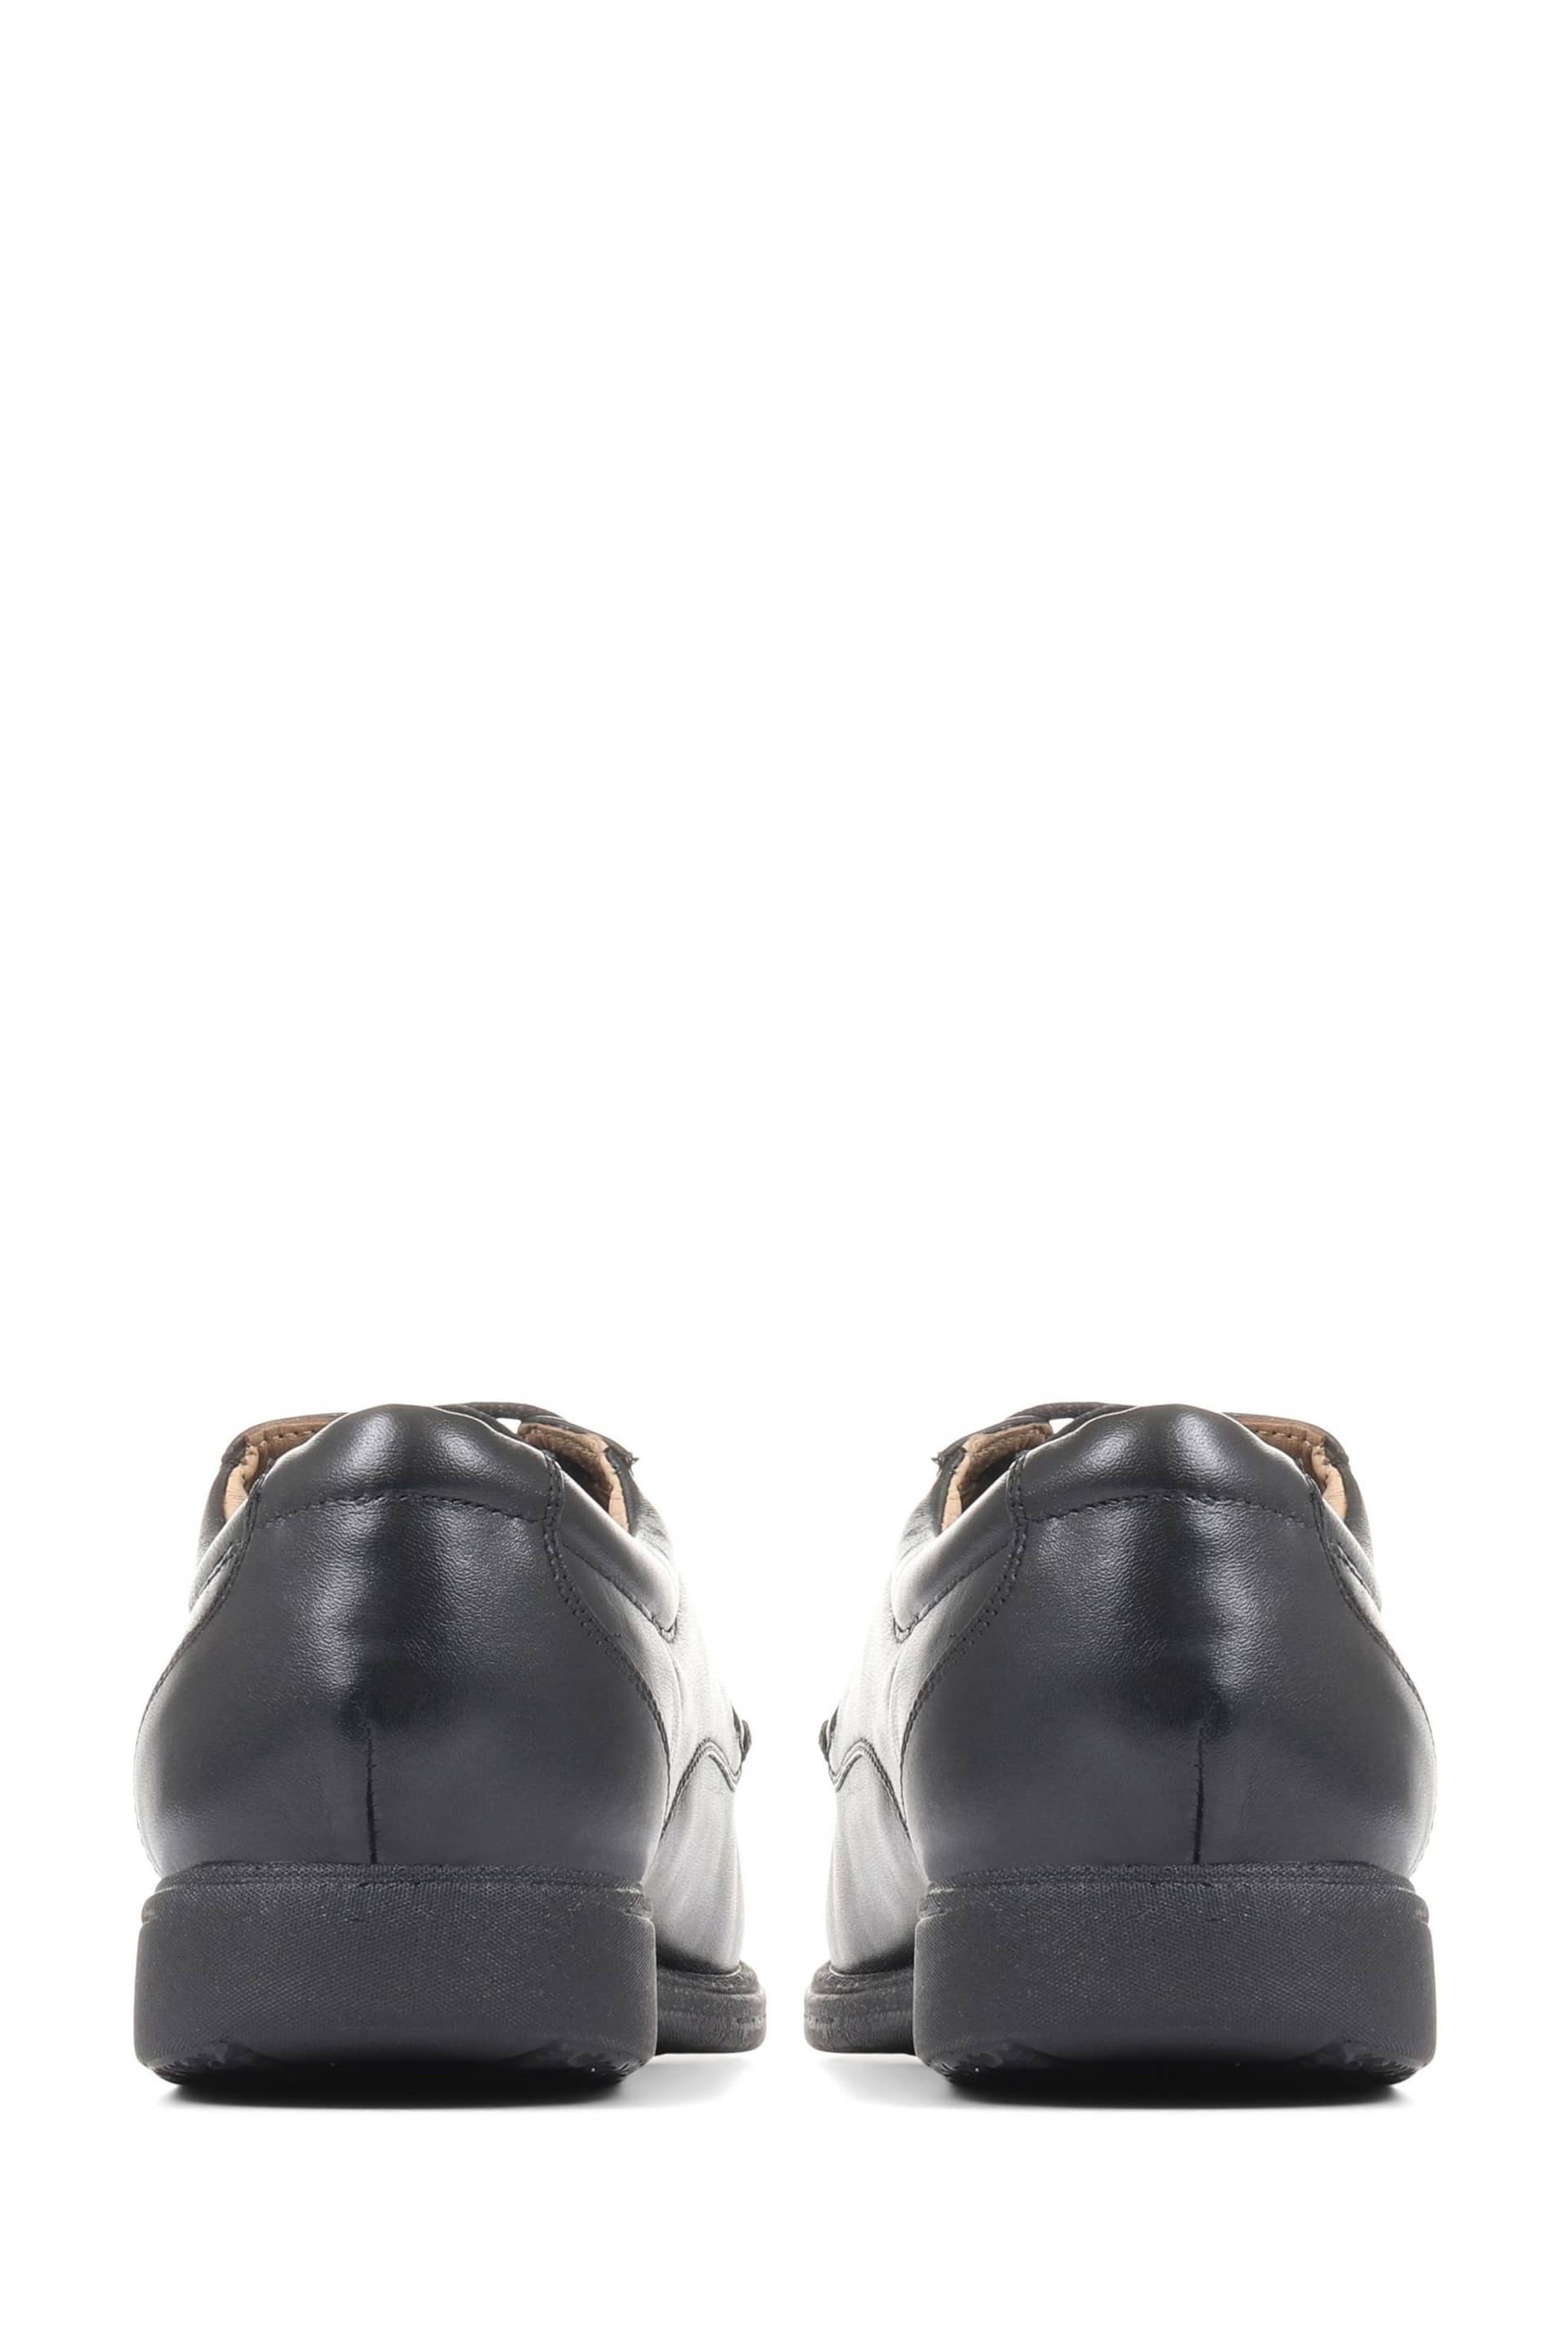 Pavers Gents Black Lace Smart Shoes - Image 3 of 5